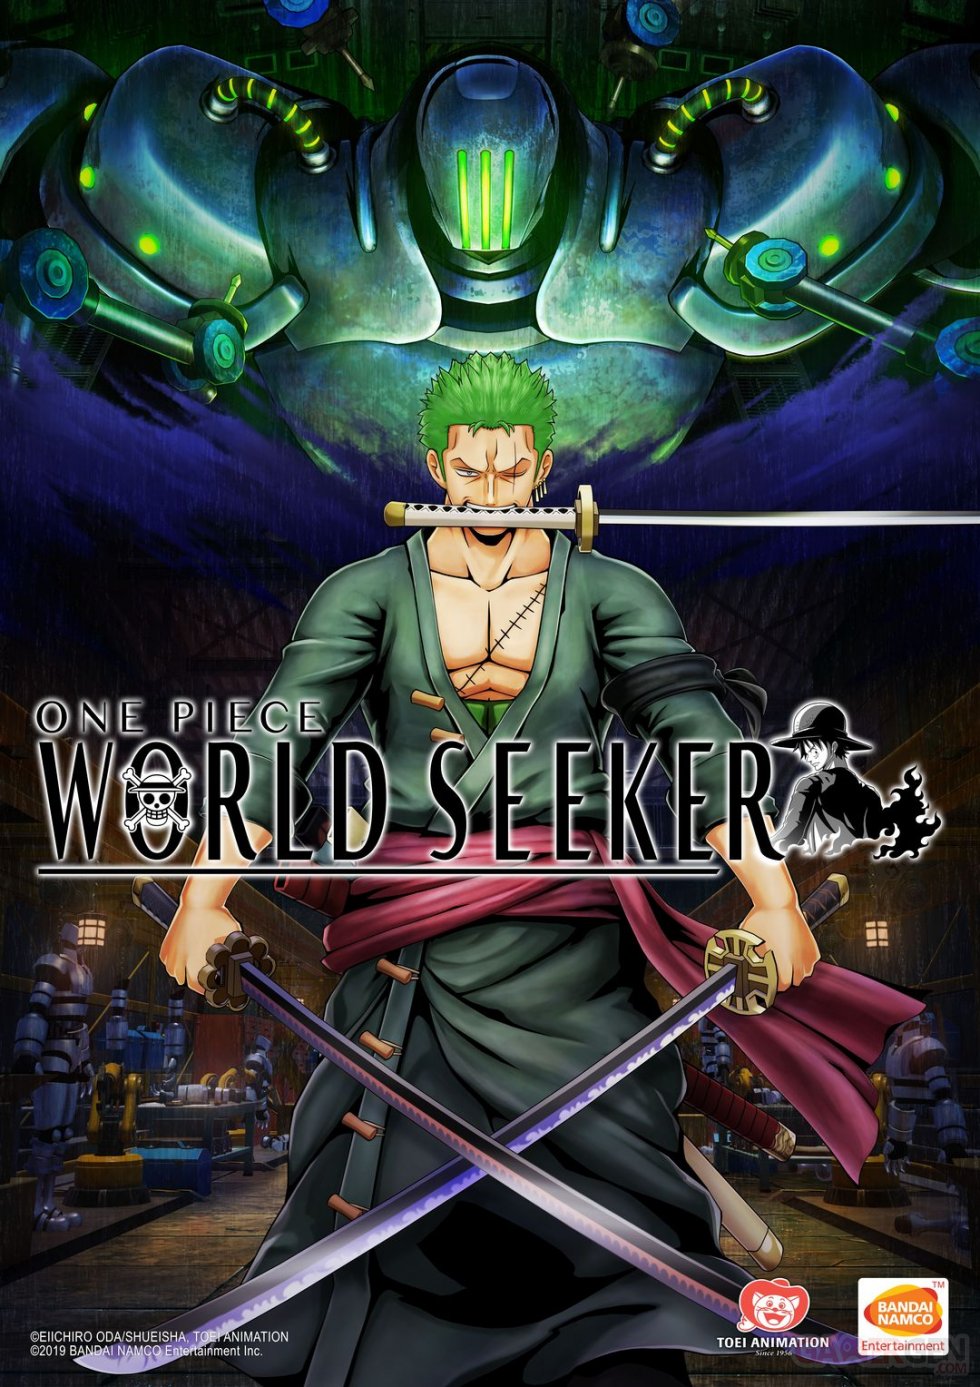 One-Piece-World-Seeker-09-19-04-2019